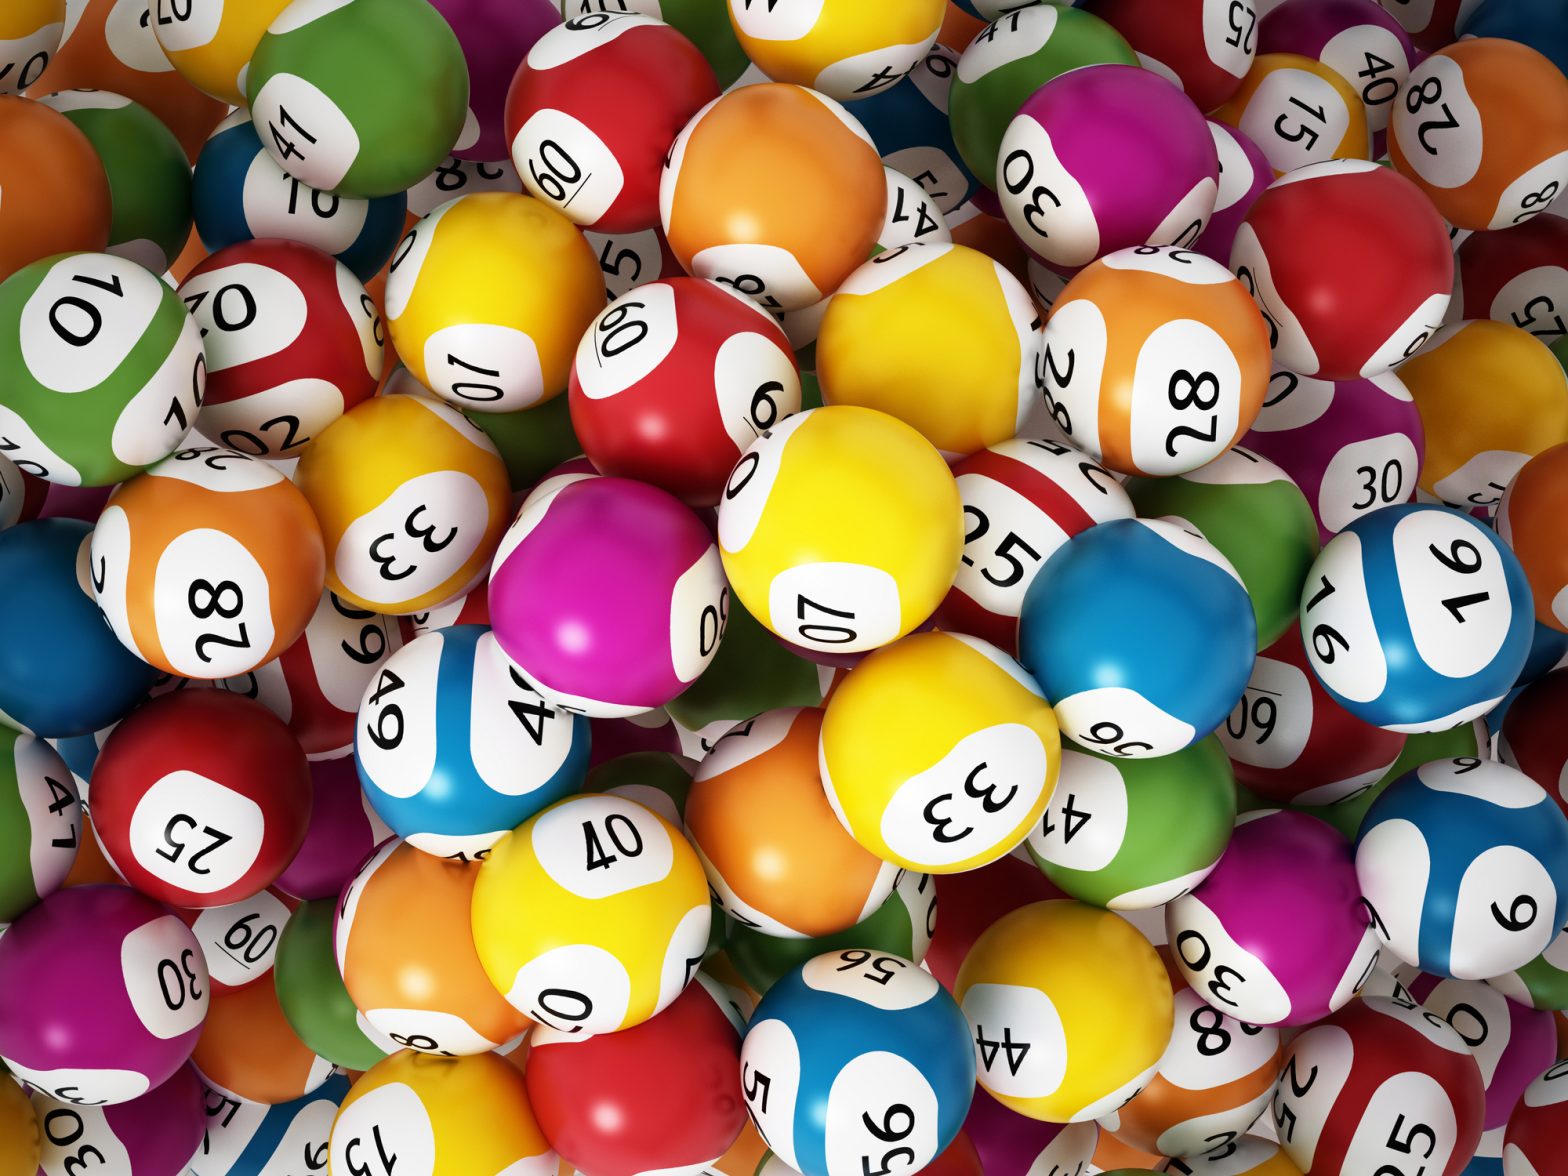 Multi-colored lottery balls